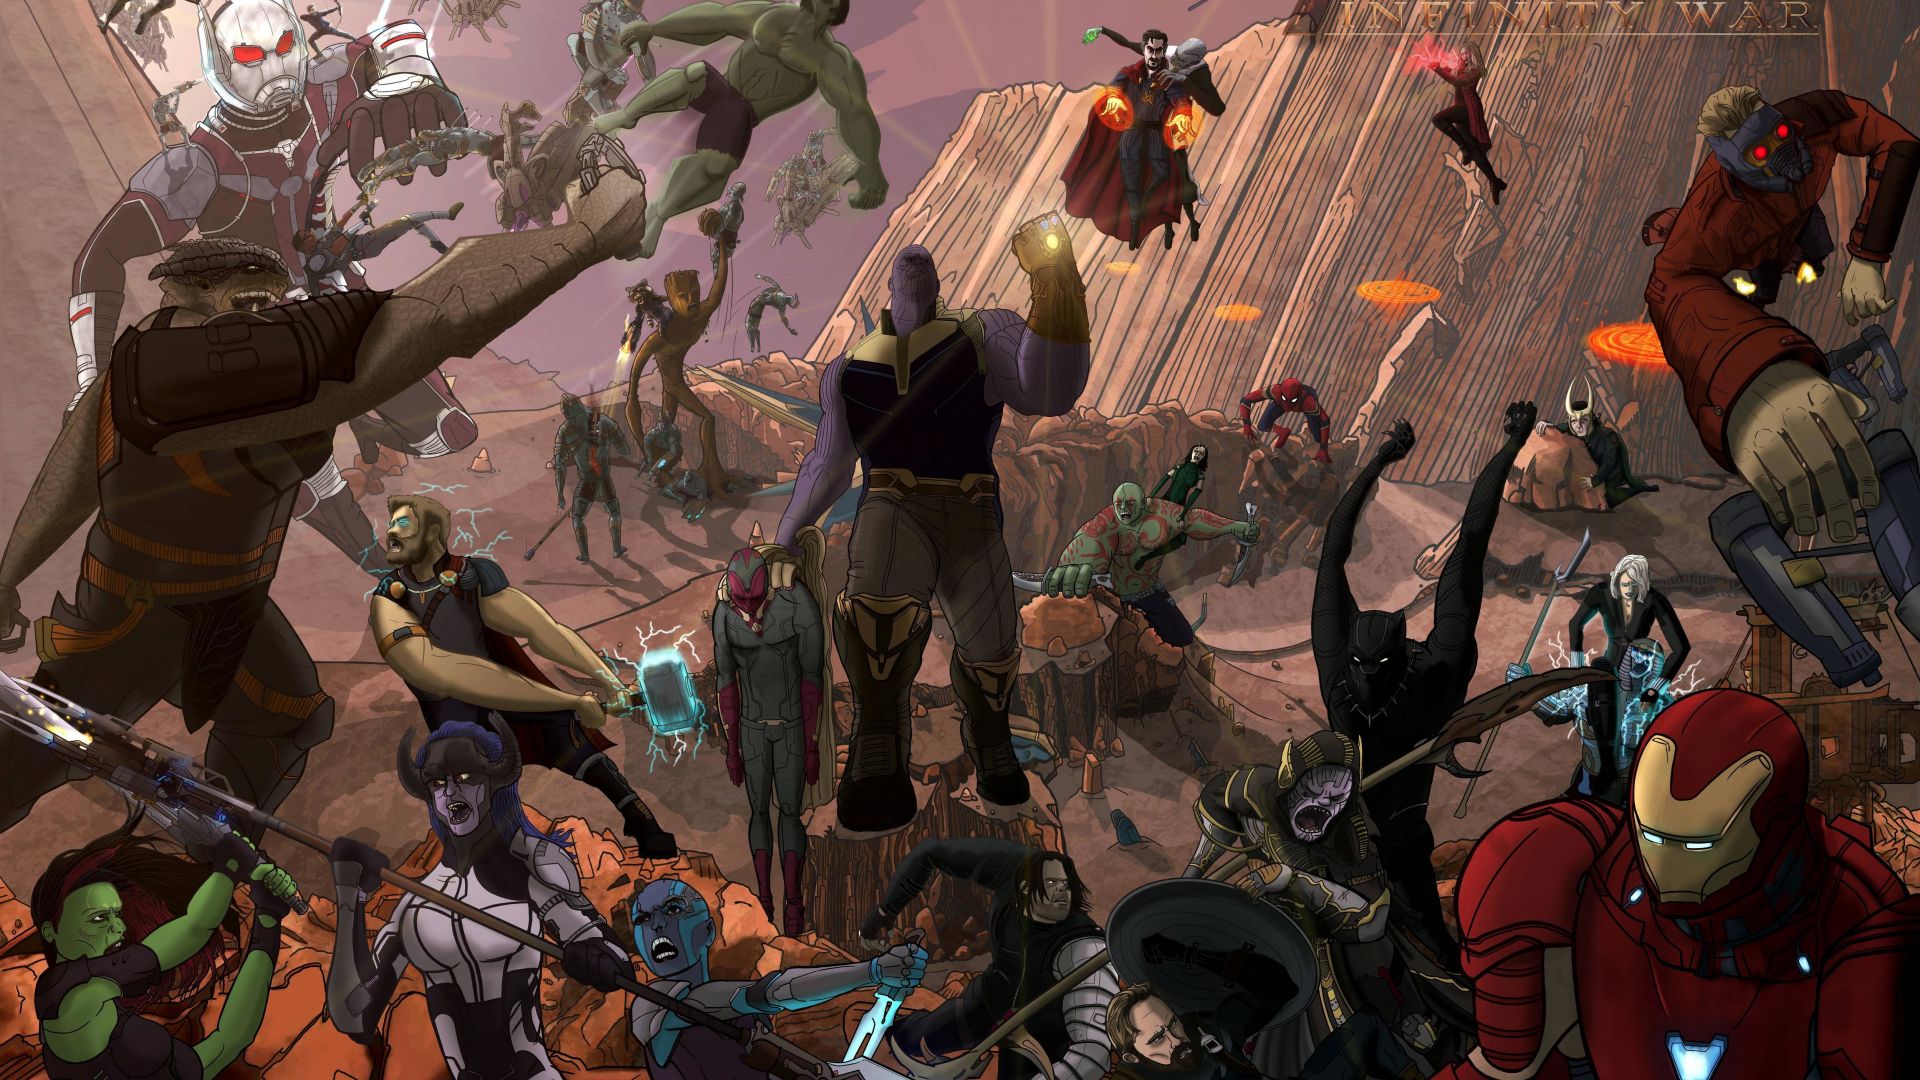 Wallpaper Avengers: infinity war, 2018 movie, 5k, fan artwork